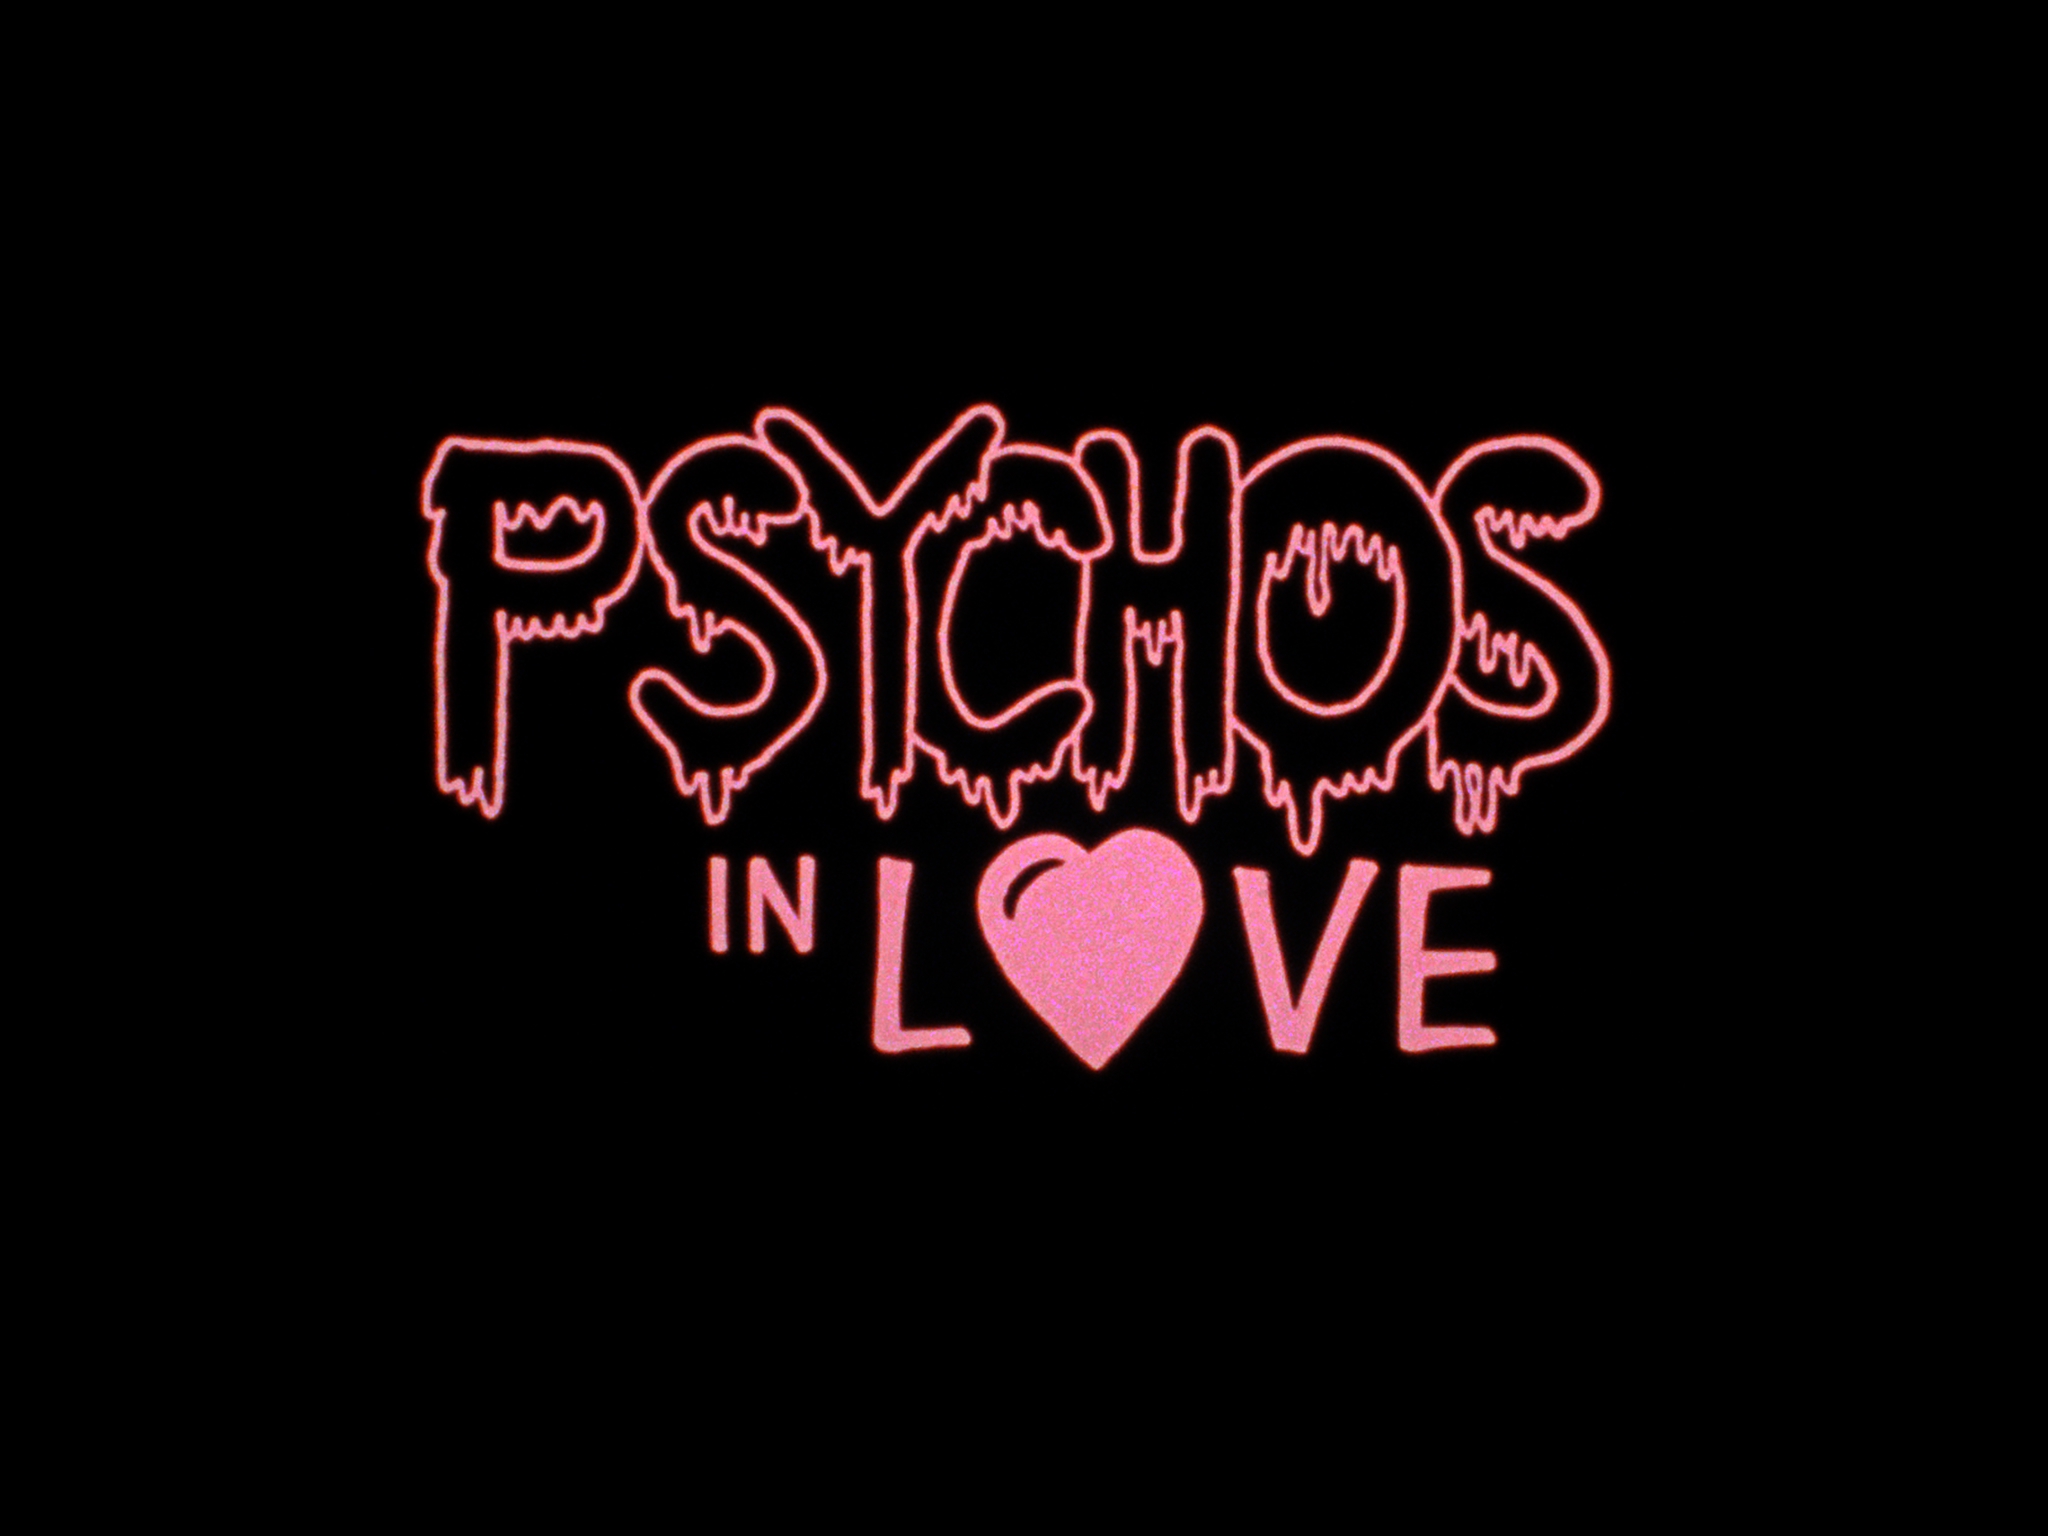 Psychos in Love (1987) - Blu-ray